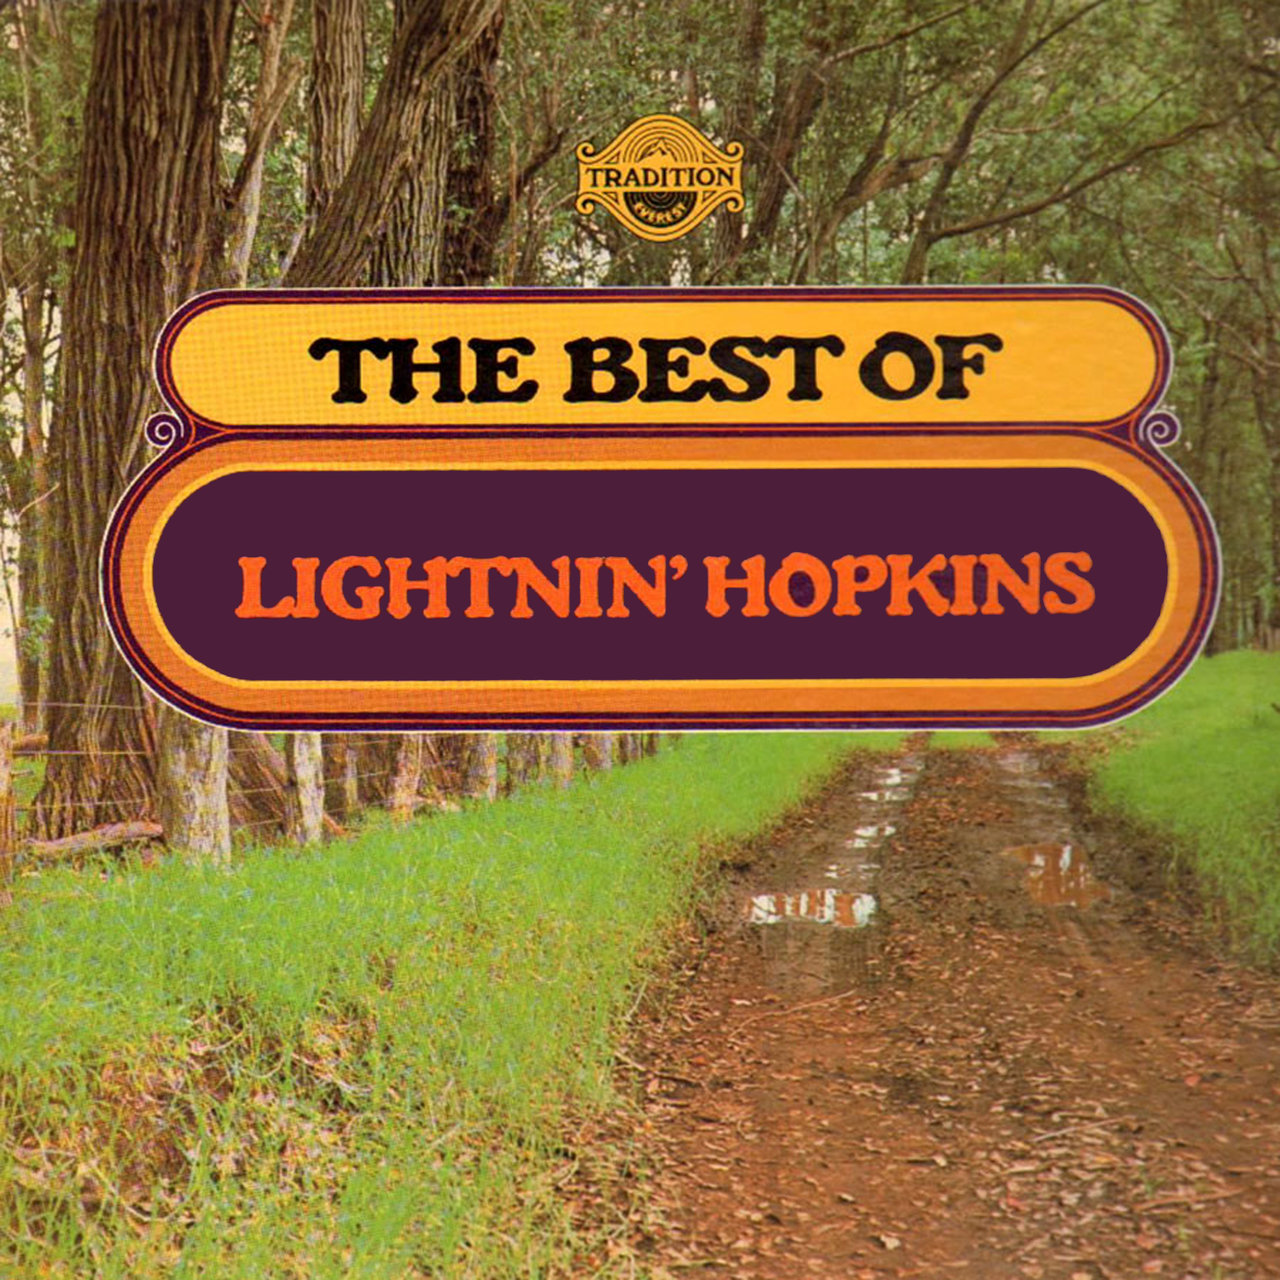 The Best of Lightnin’ Hopkins [1973]